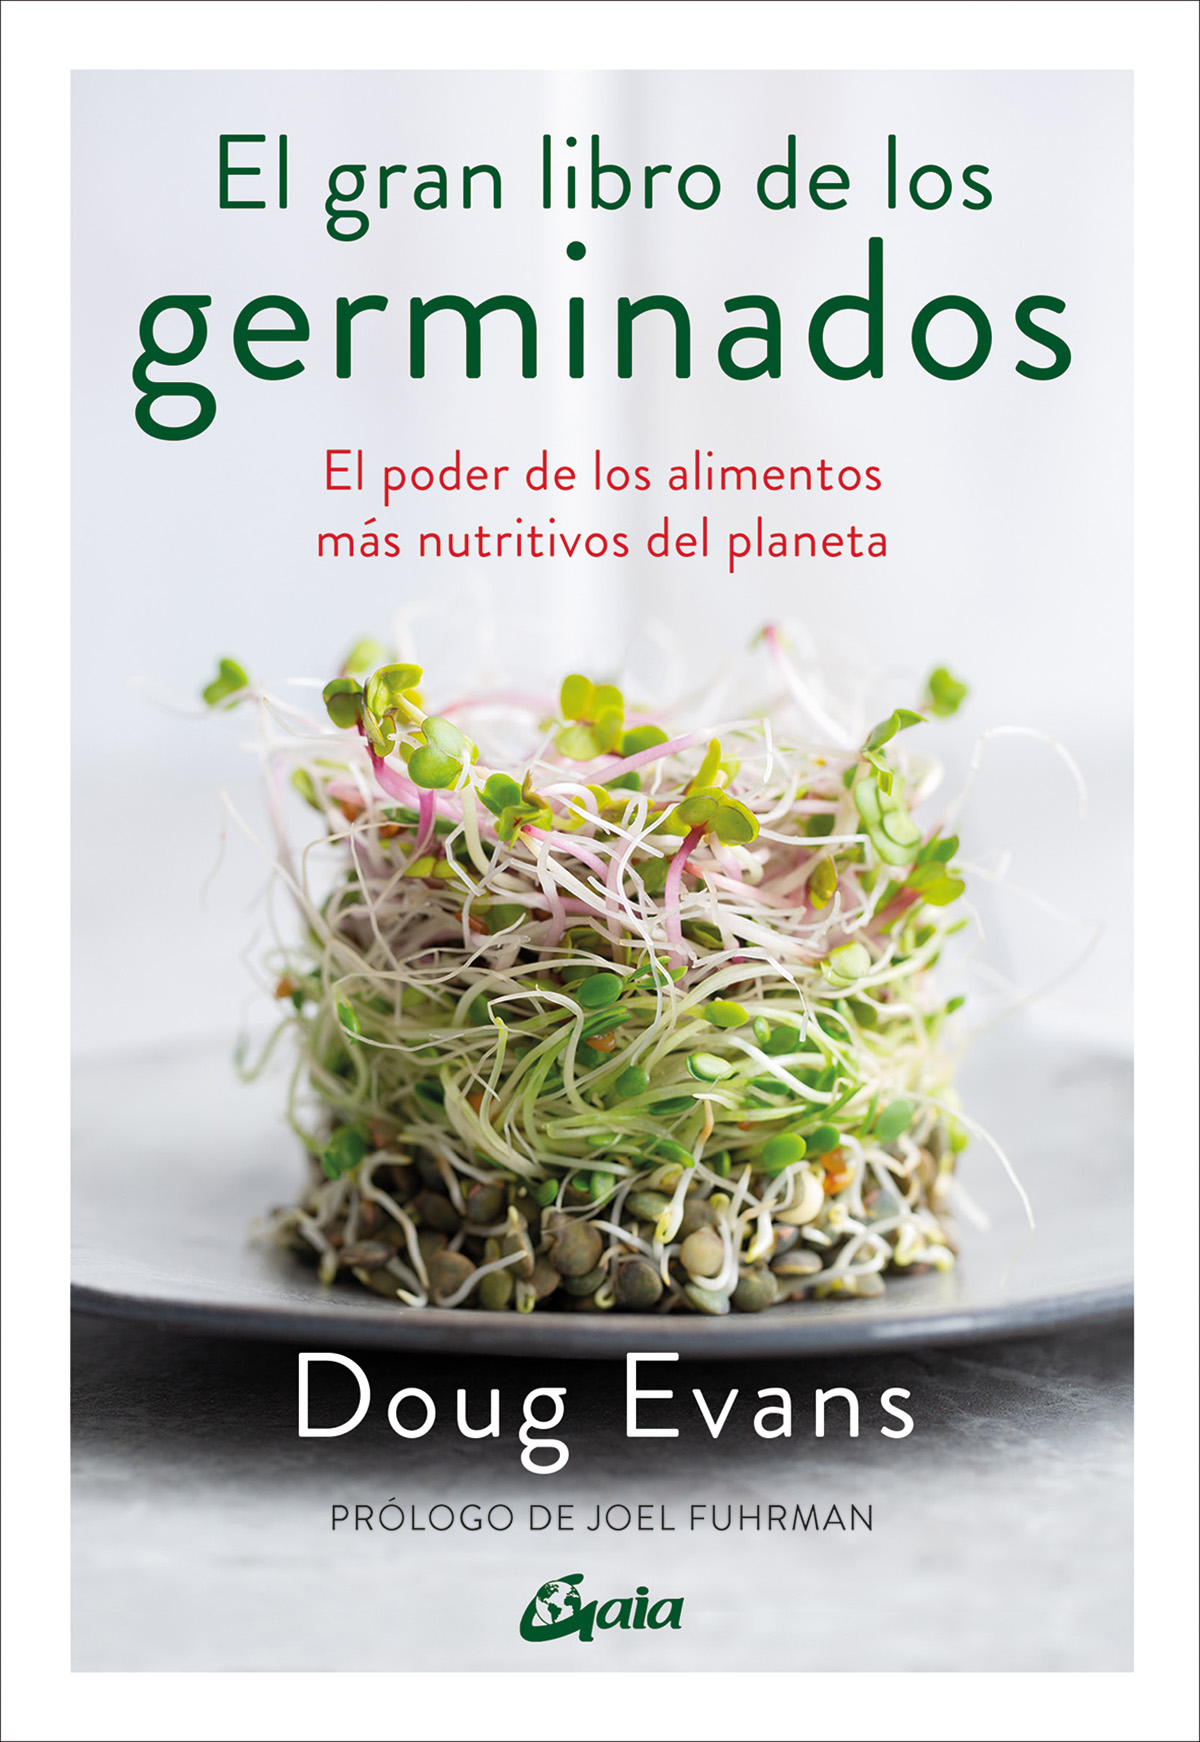 
            El gran libro de los germinados